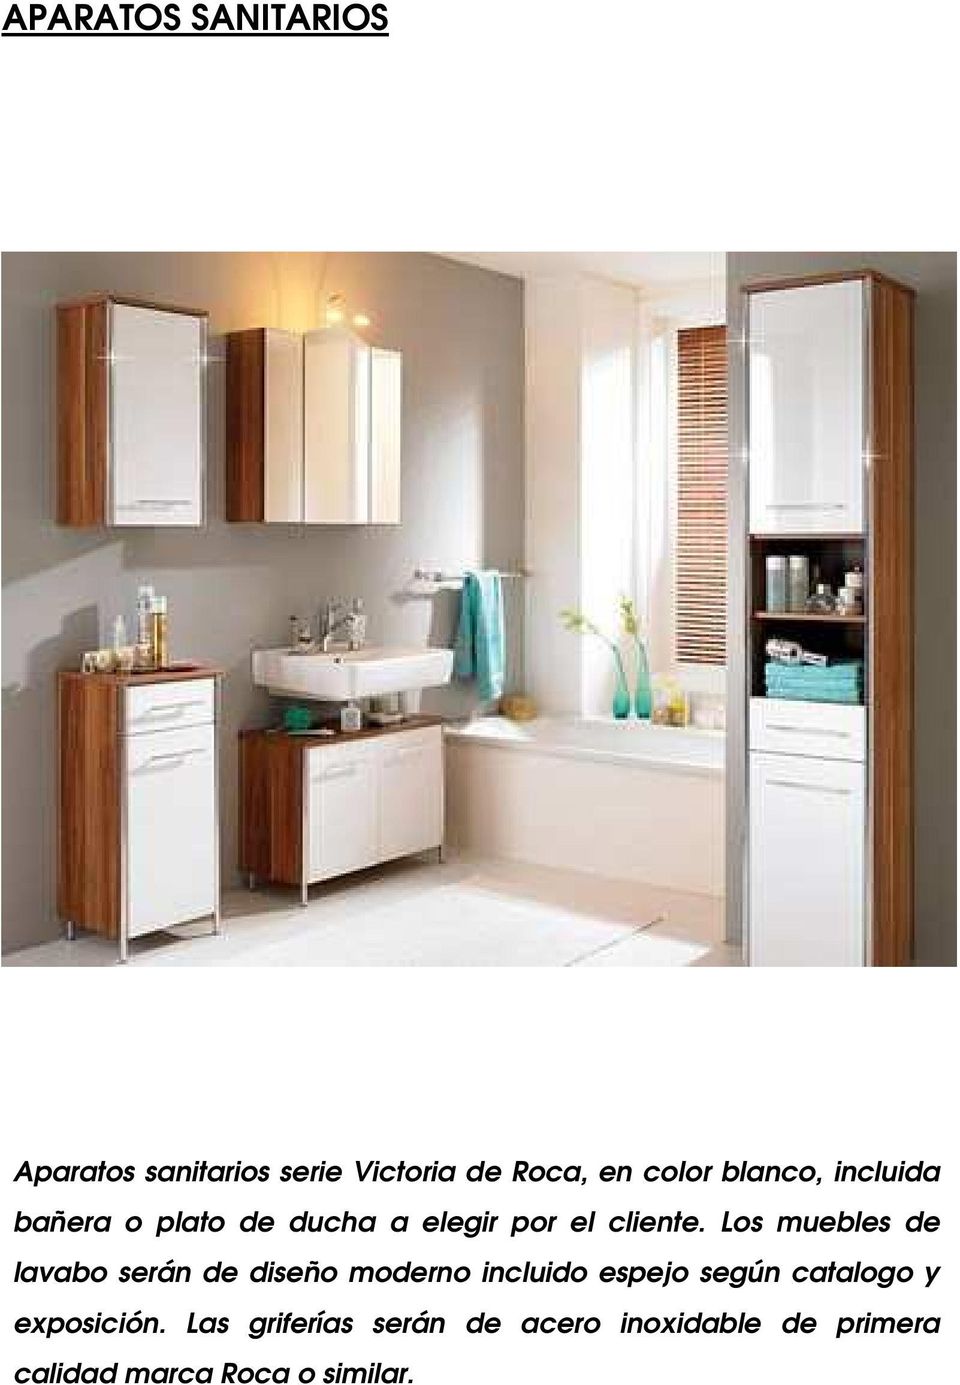 Los muebles de lavabo serán de diseño moderno incluido espejo según catalogo